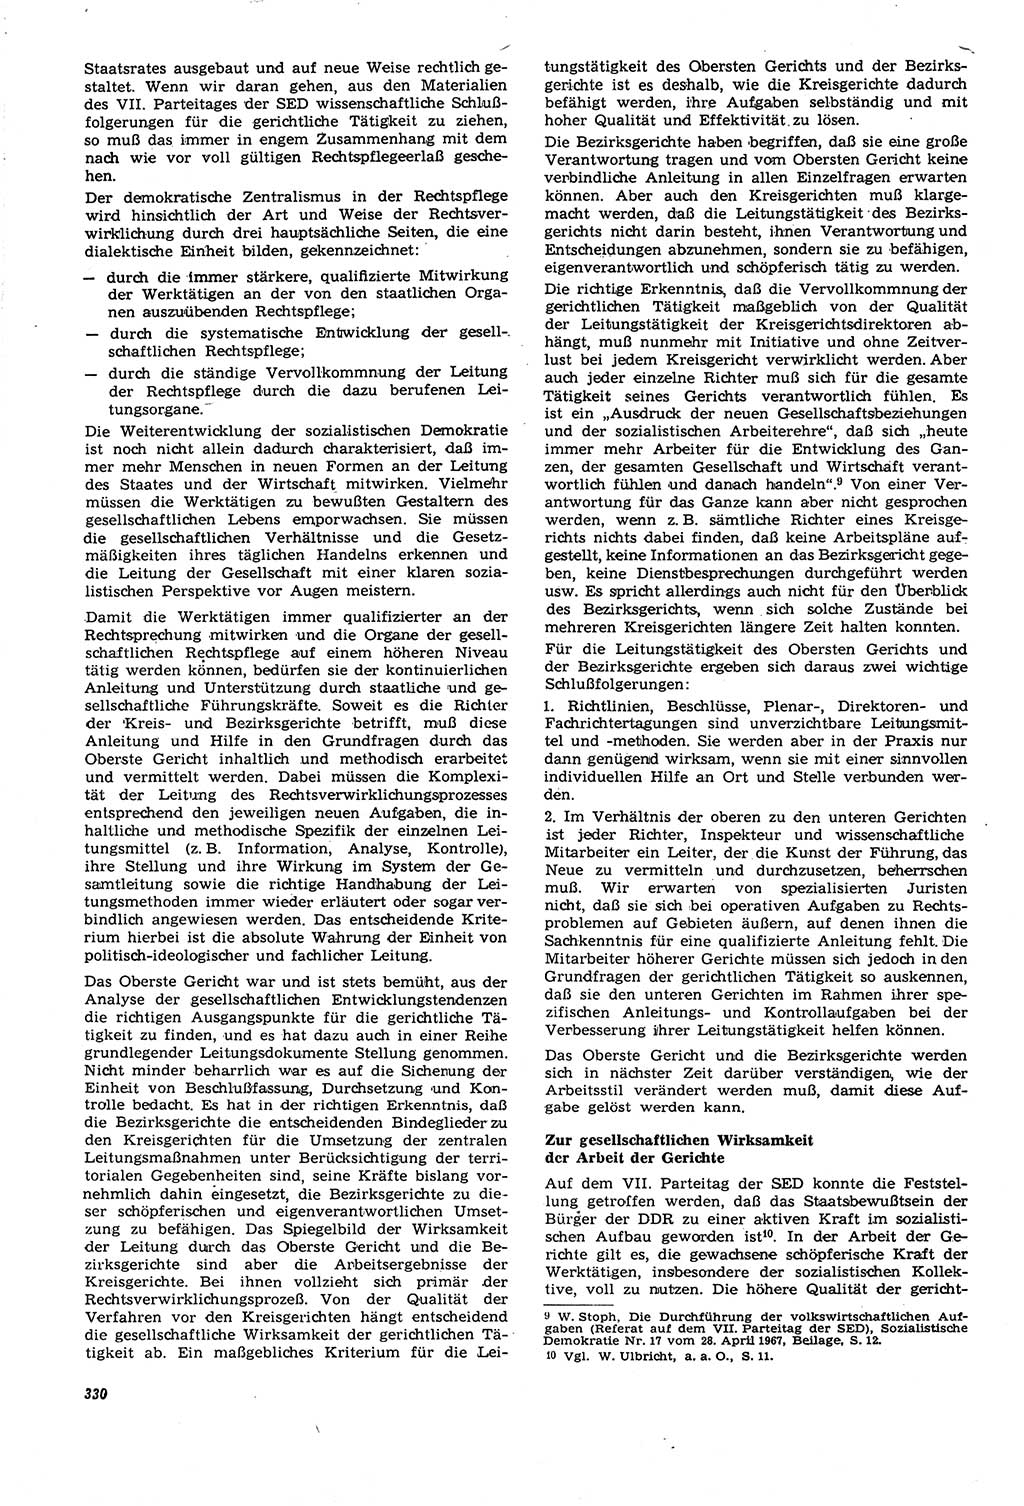 Neue Justiz (NJ), Zeitschrift für Recht und Rechtswissenschaft [Deutsche Demokratische Republik (DDR)], 21. Jahrgang 1967, Seite 330 (NJ DDR 1967, S. 330)